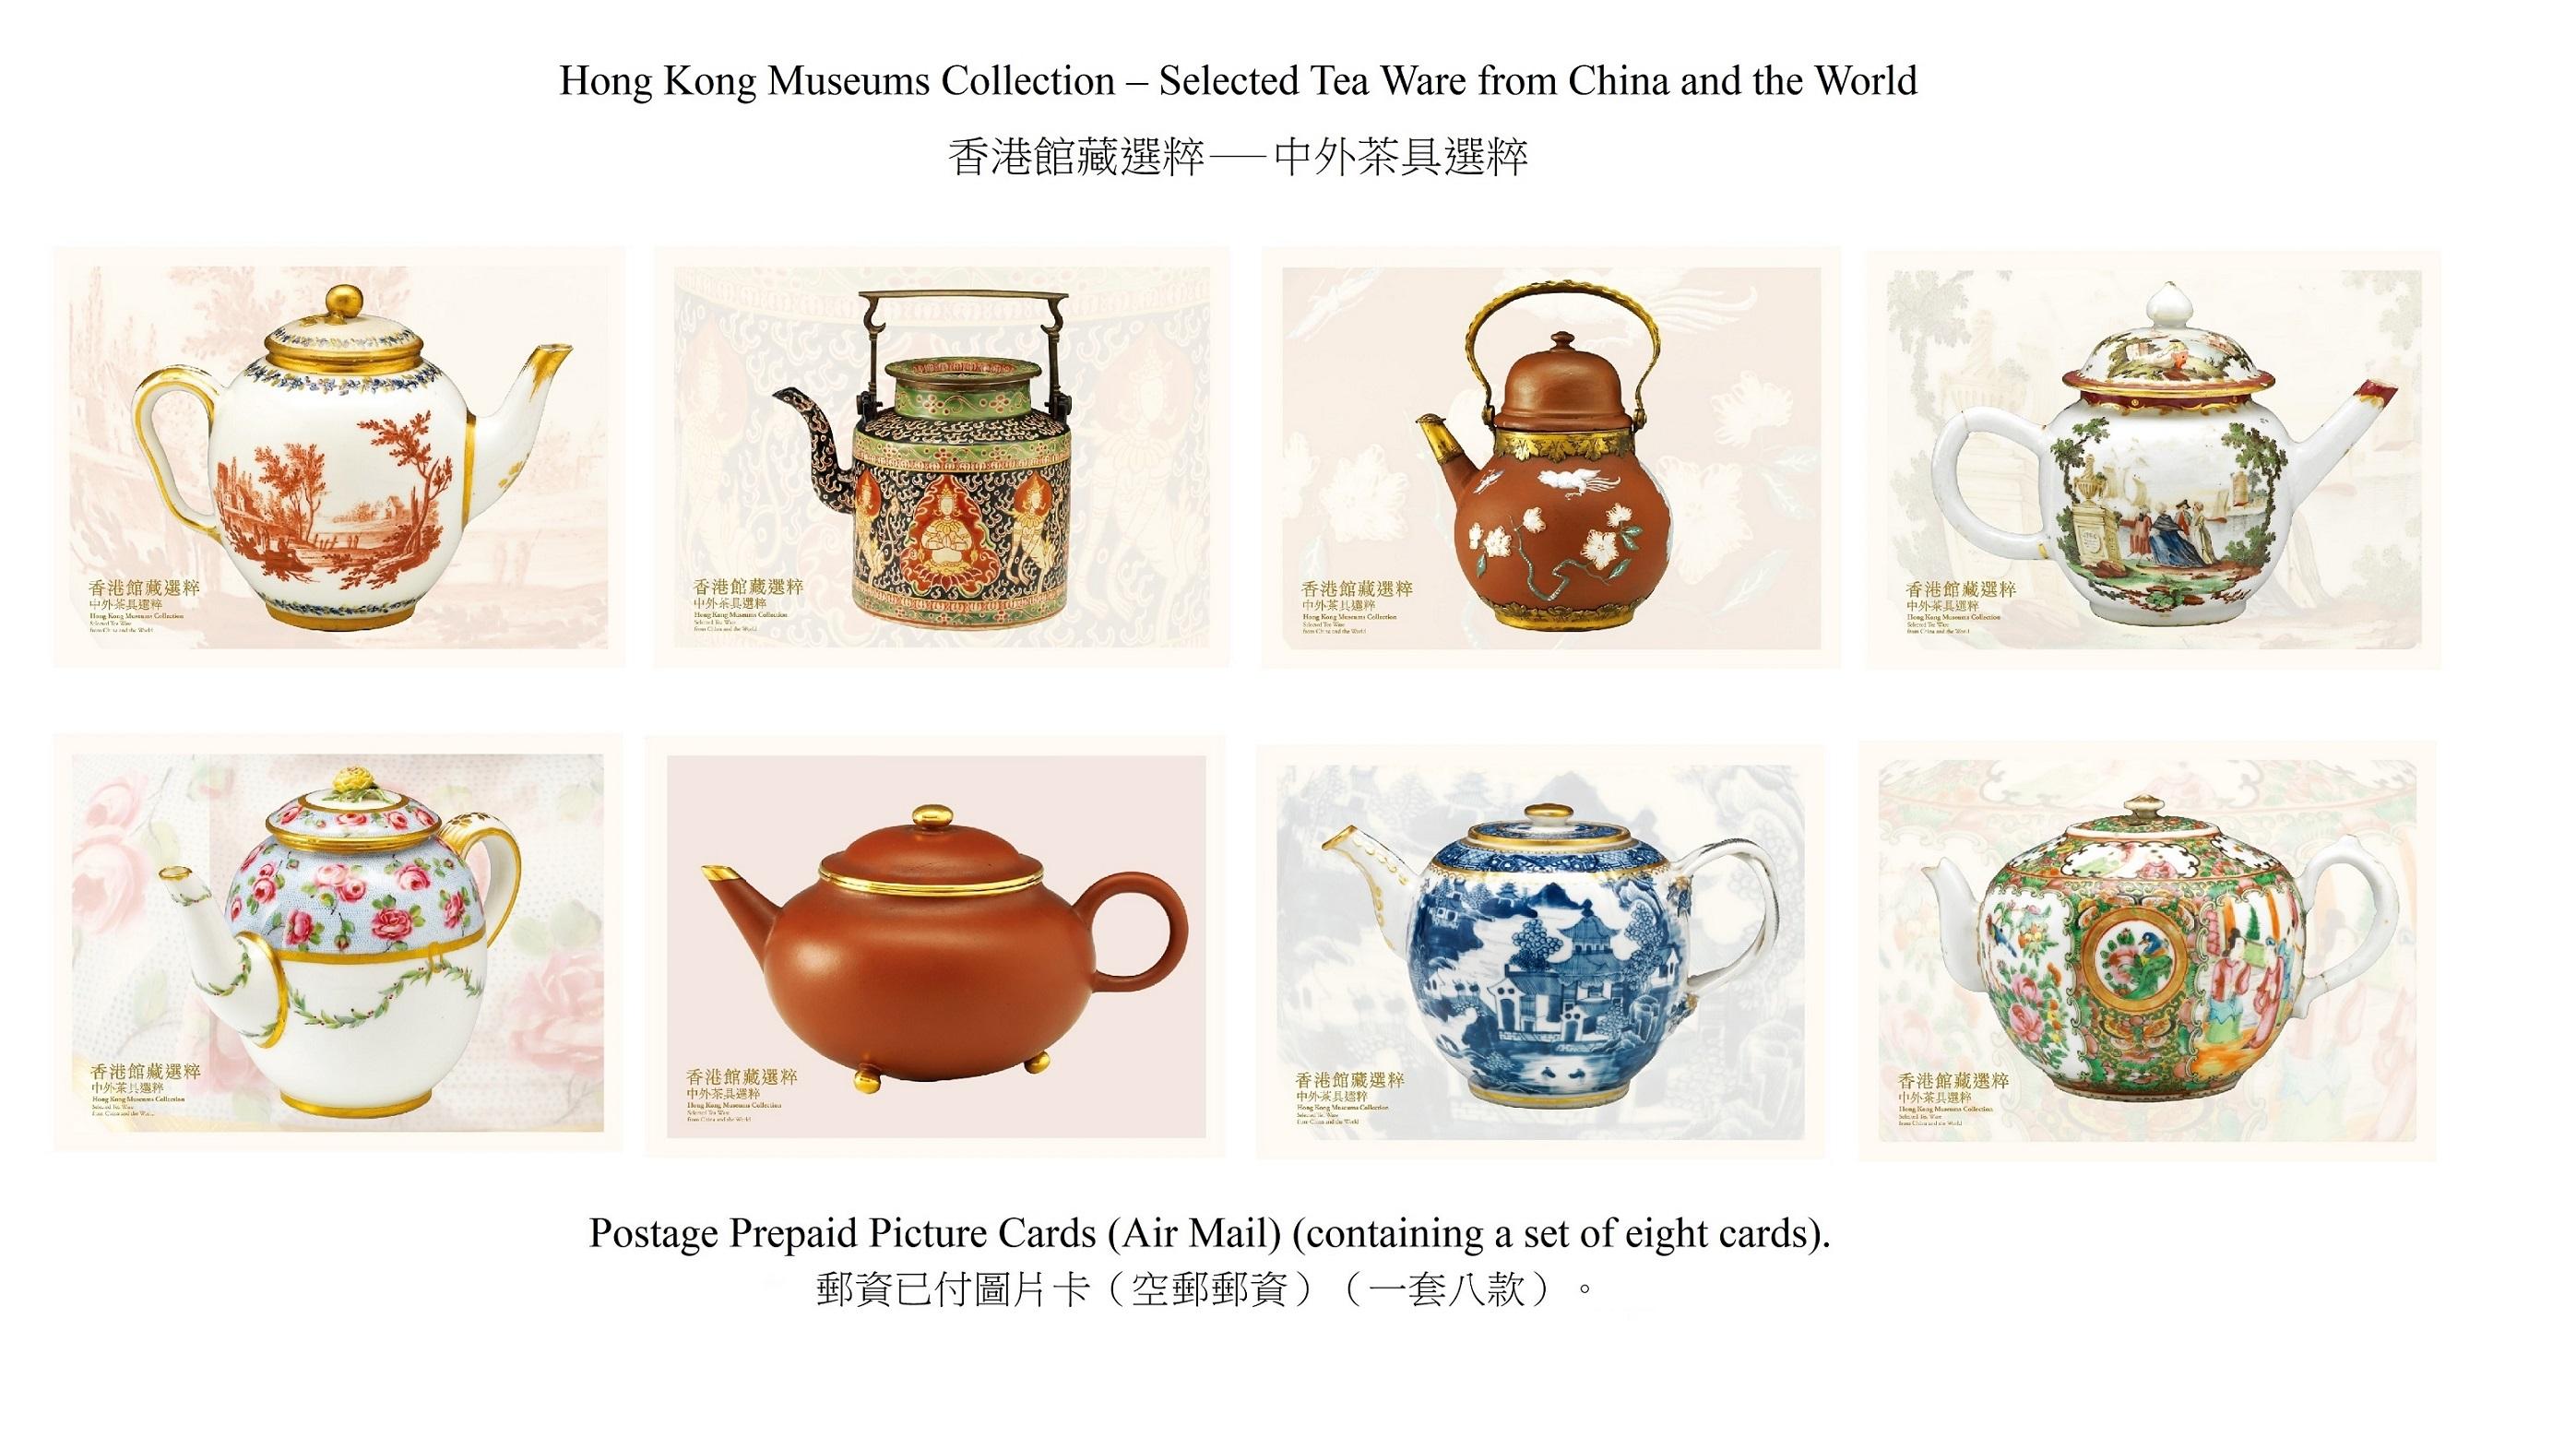 香港郵政四月十八日（星期四）發行以「香港館藏選粹──中外茶具選粹」為題的特別郵票及相關集郵品。圖示郵資已付圖片卡（空郵郵資）。